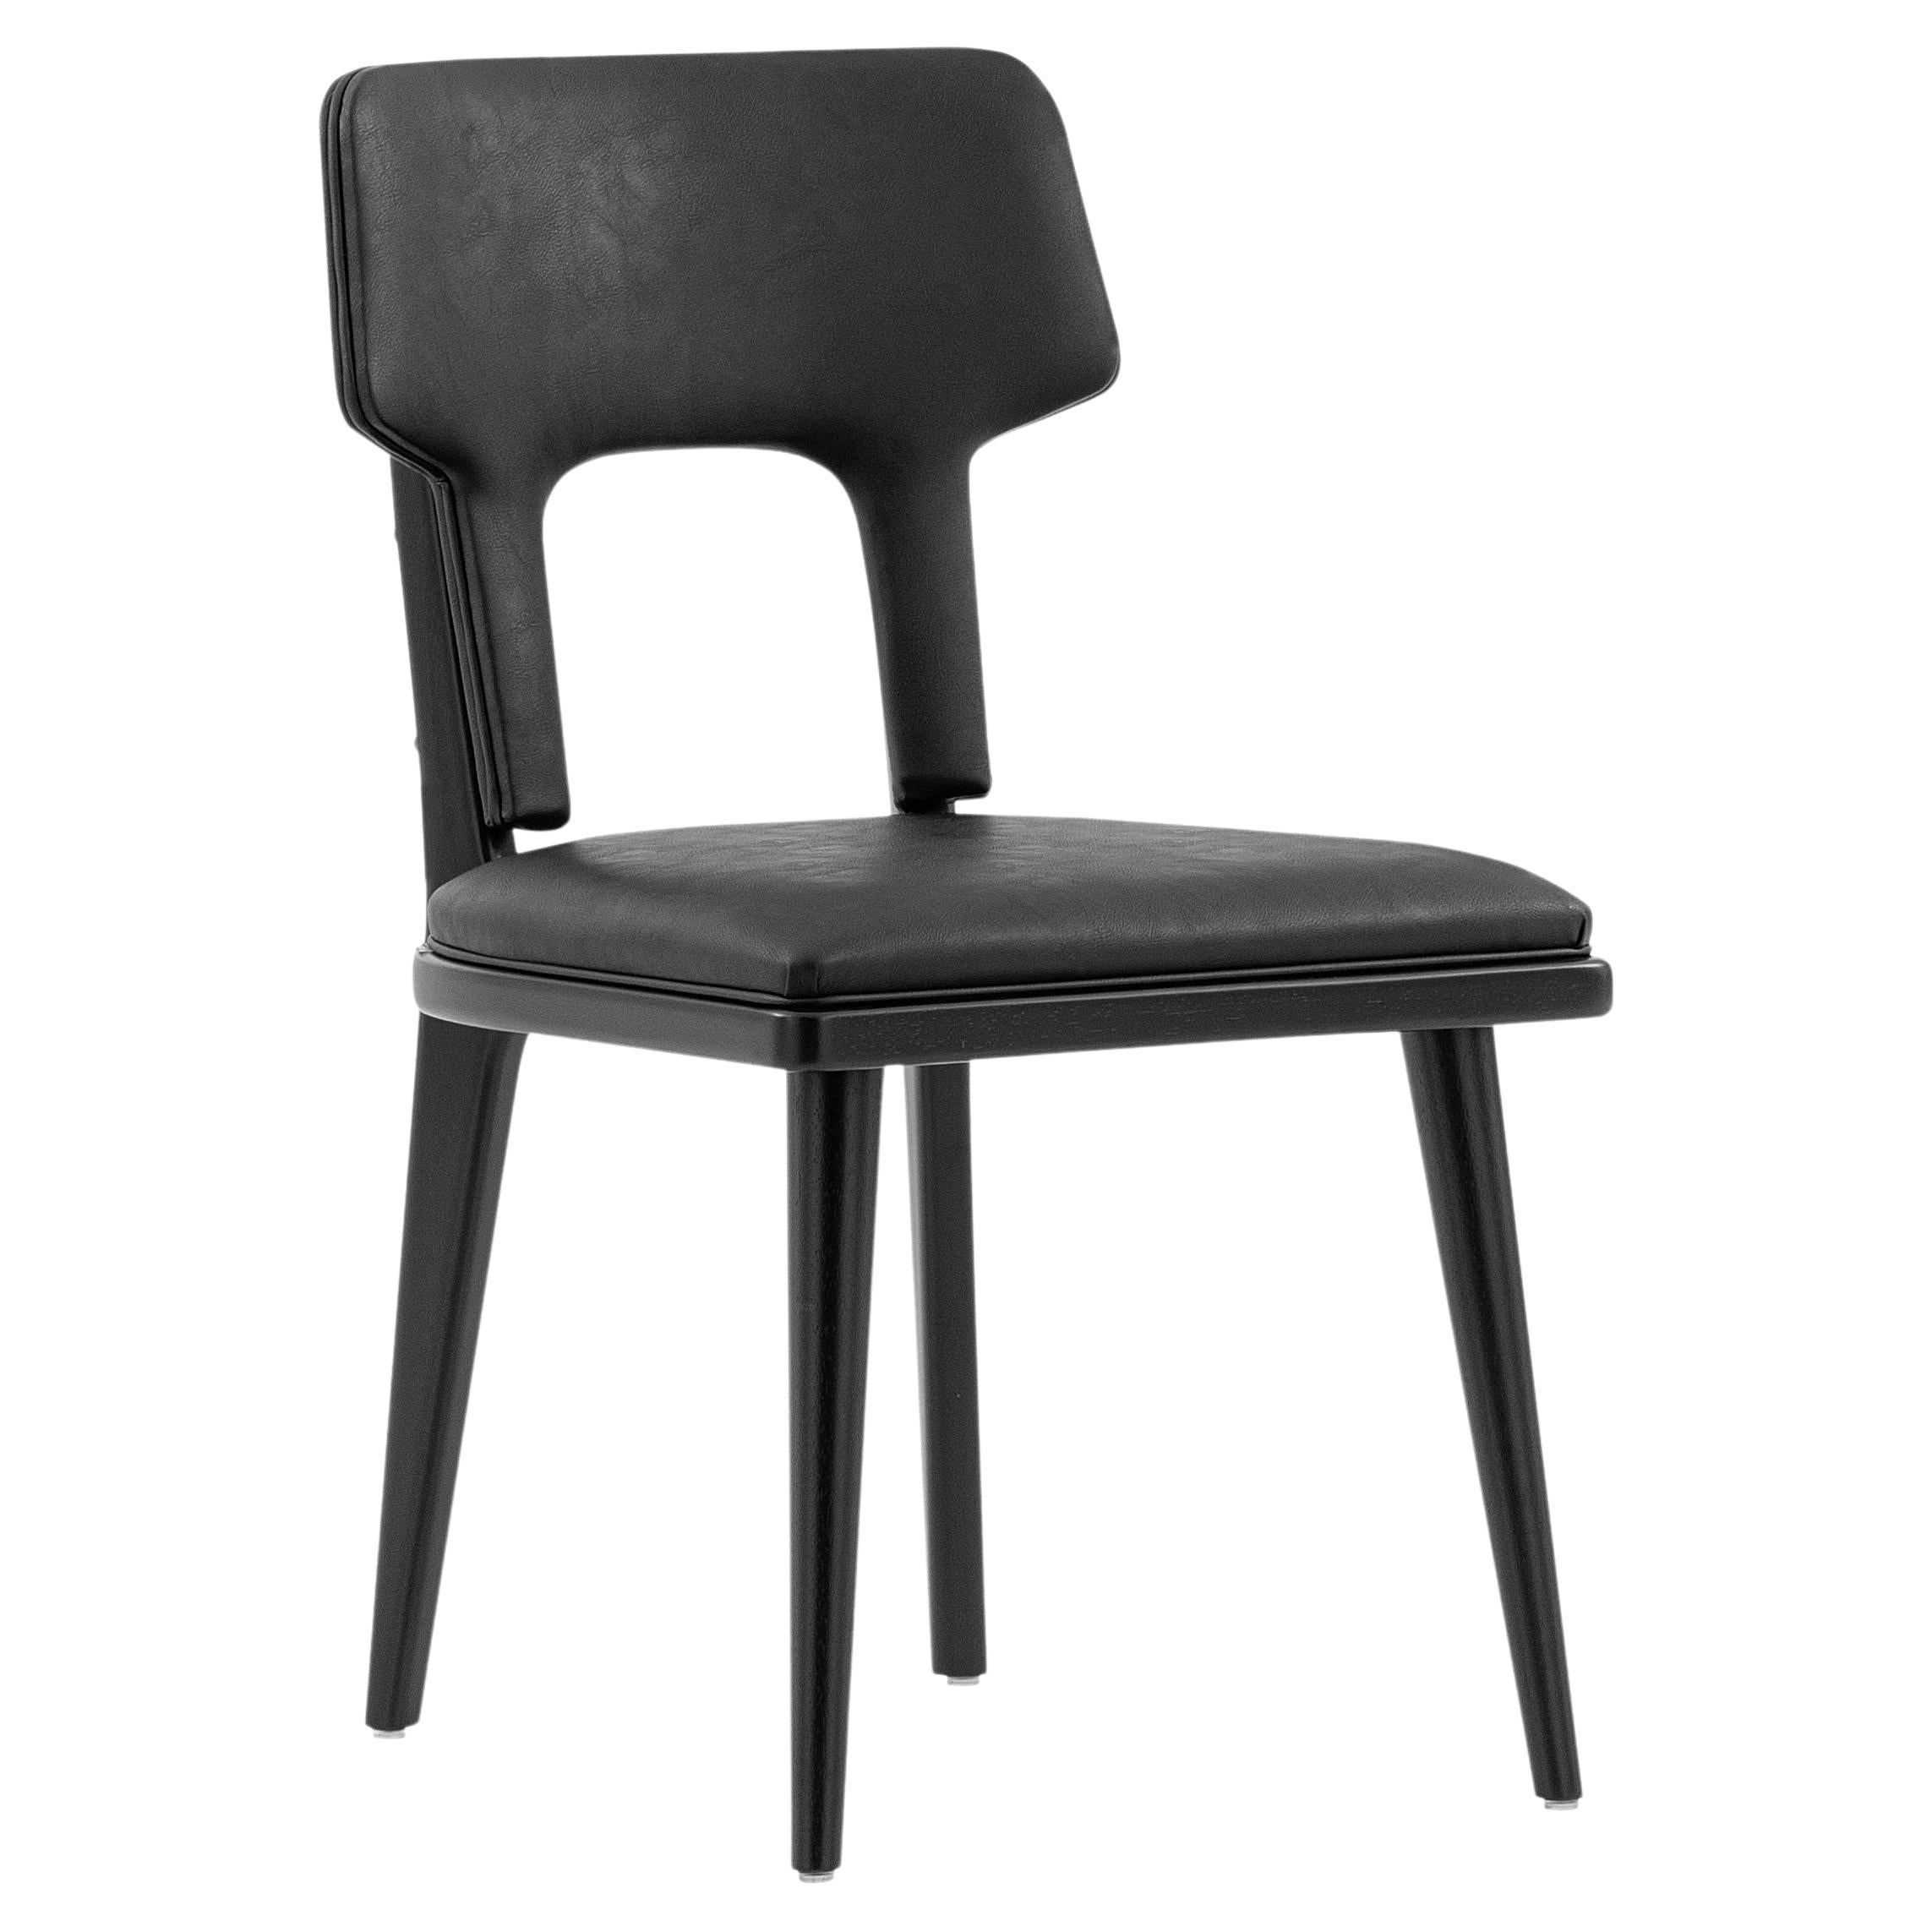 La chaise de salle à manger Fork a été fabriquée par notre équipe Uultis avec un tissu noir et une finition Uultis en bois noir pour les pieds. Notre formidable équipe chez Uultis a pensé à chaque petit détail pour que cette chaise de salle à manger